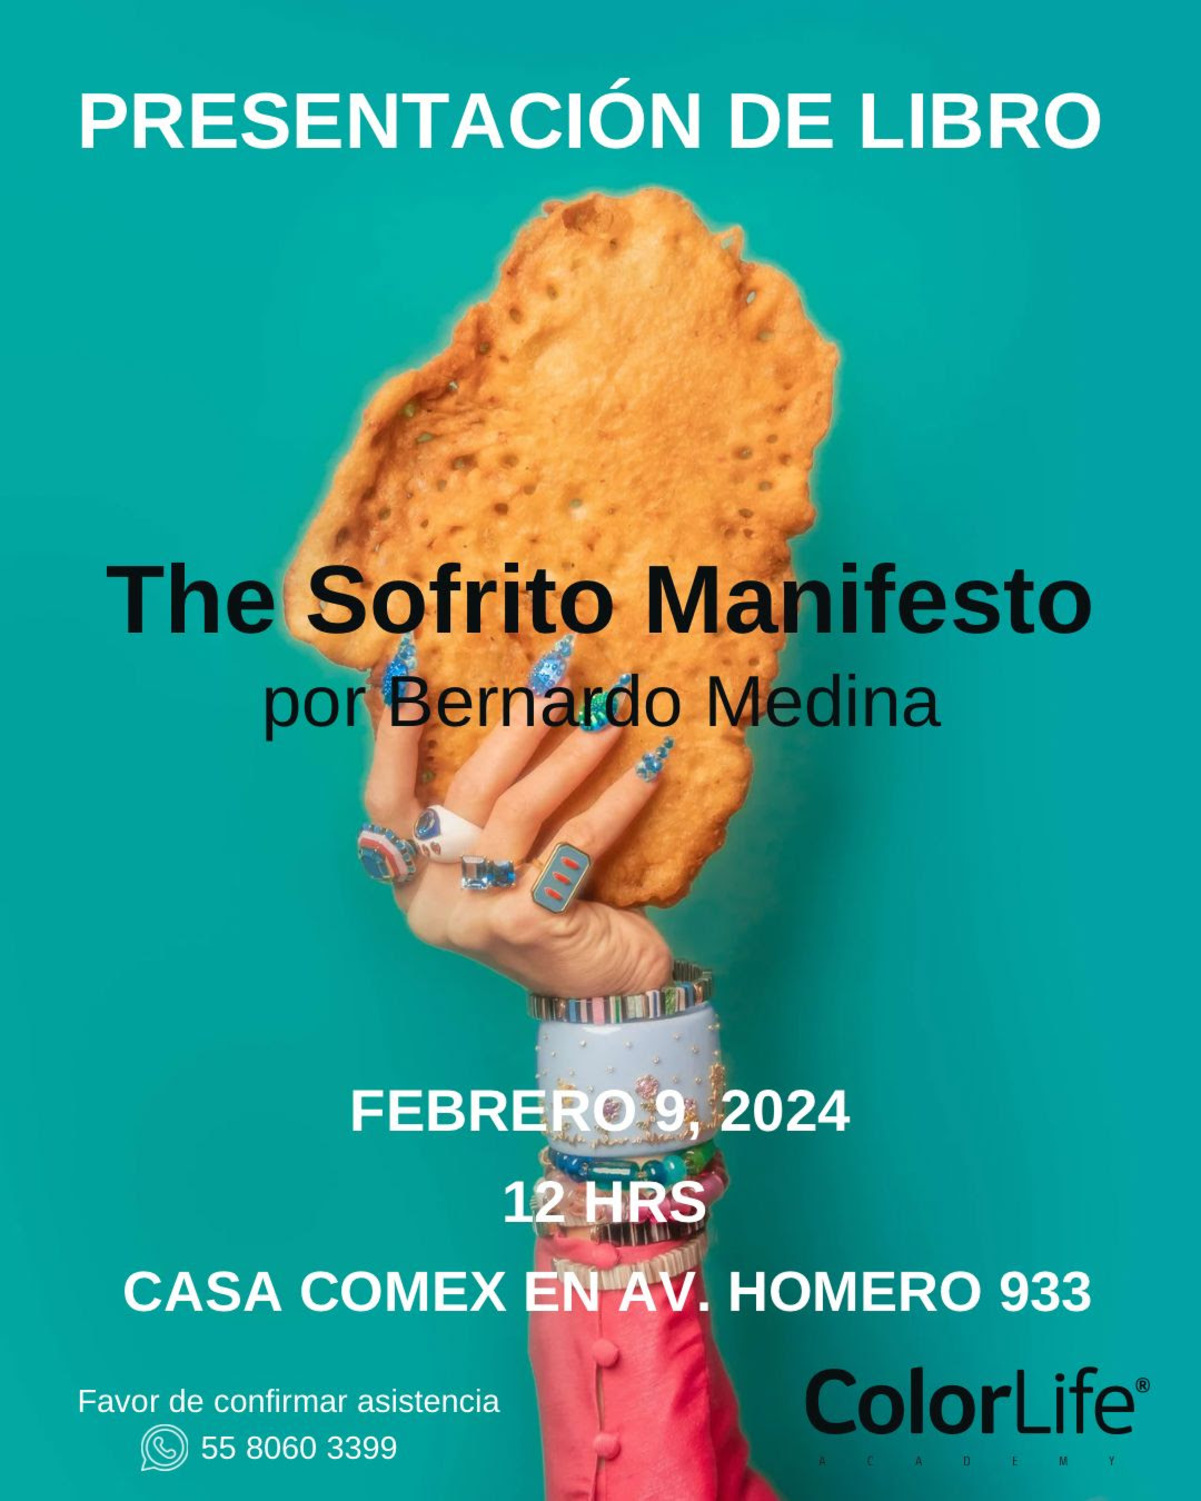 Del arte a la gastronomía, Bernardo Medina “BeMe” presentó compilado de recetas de sus abuelas